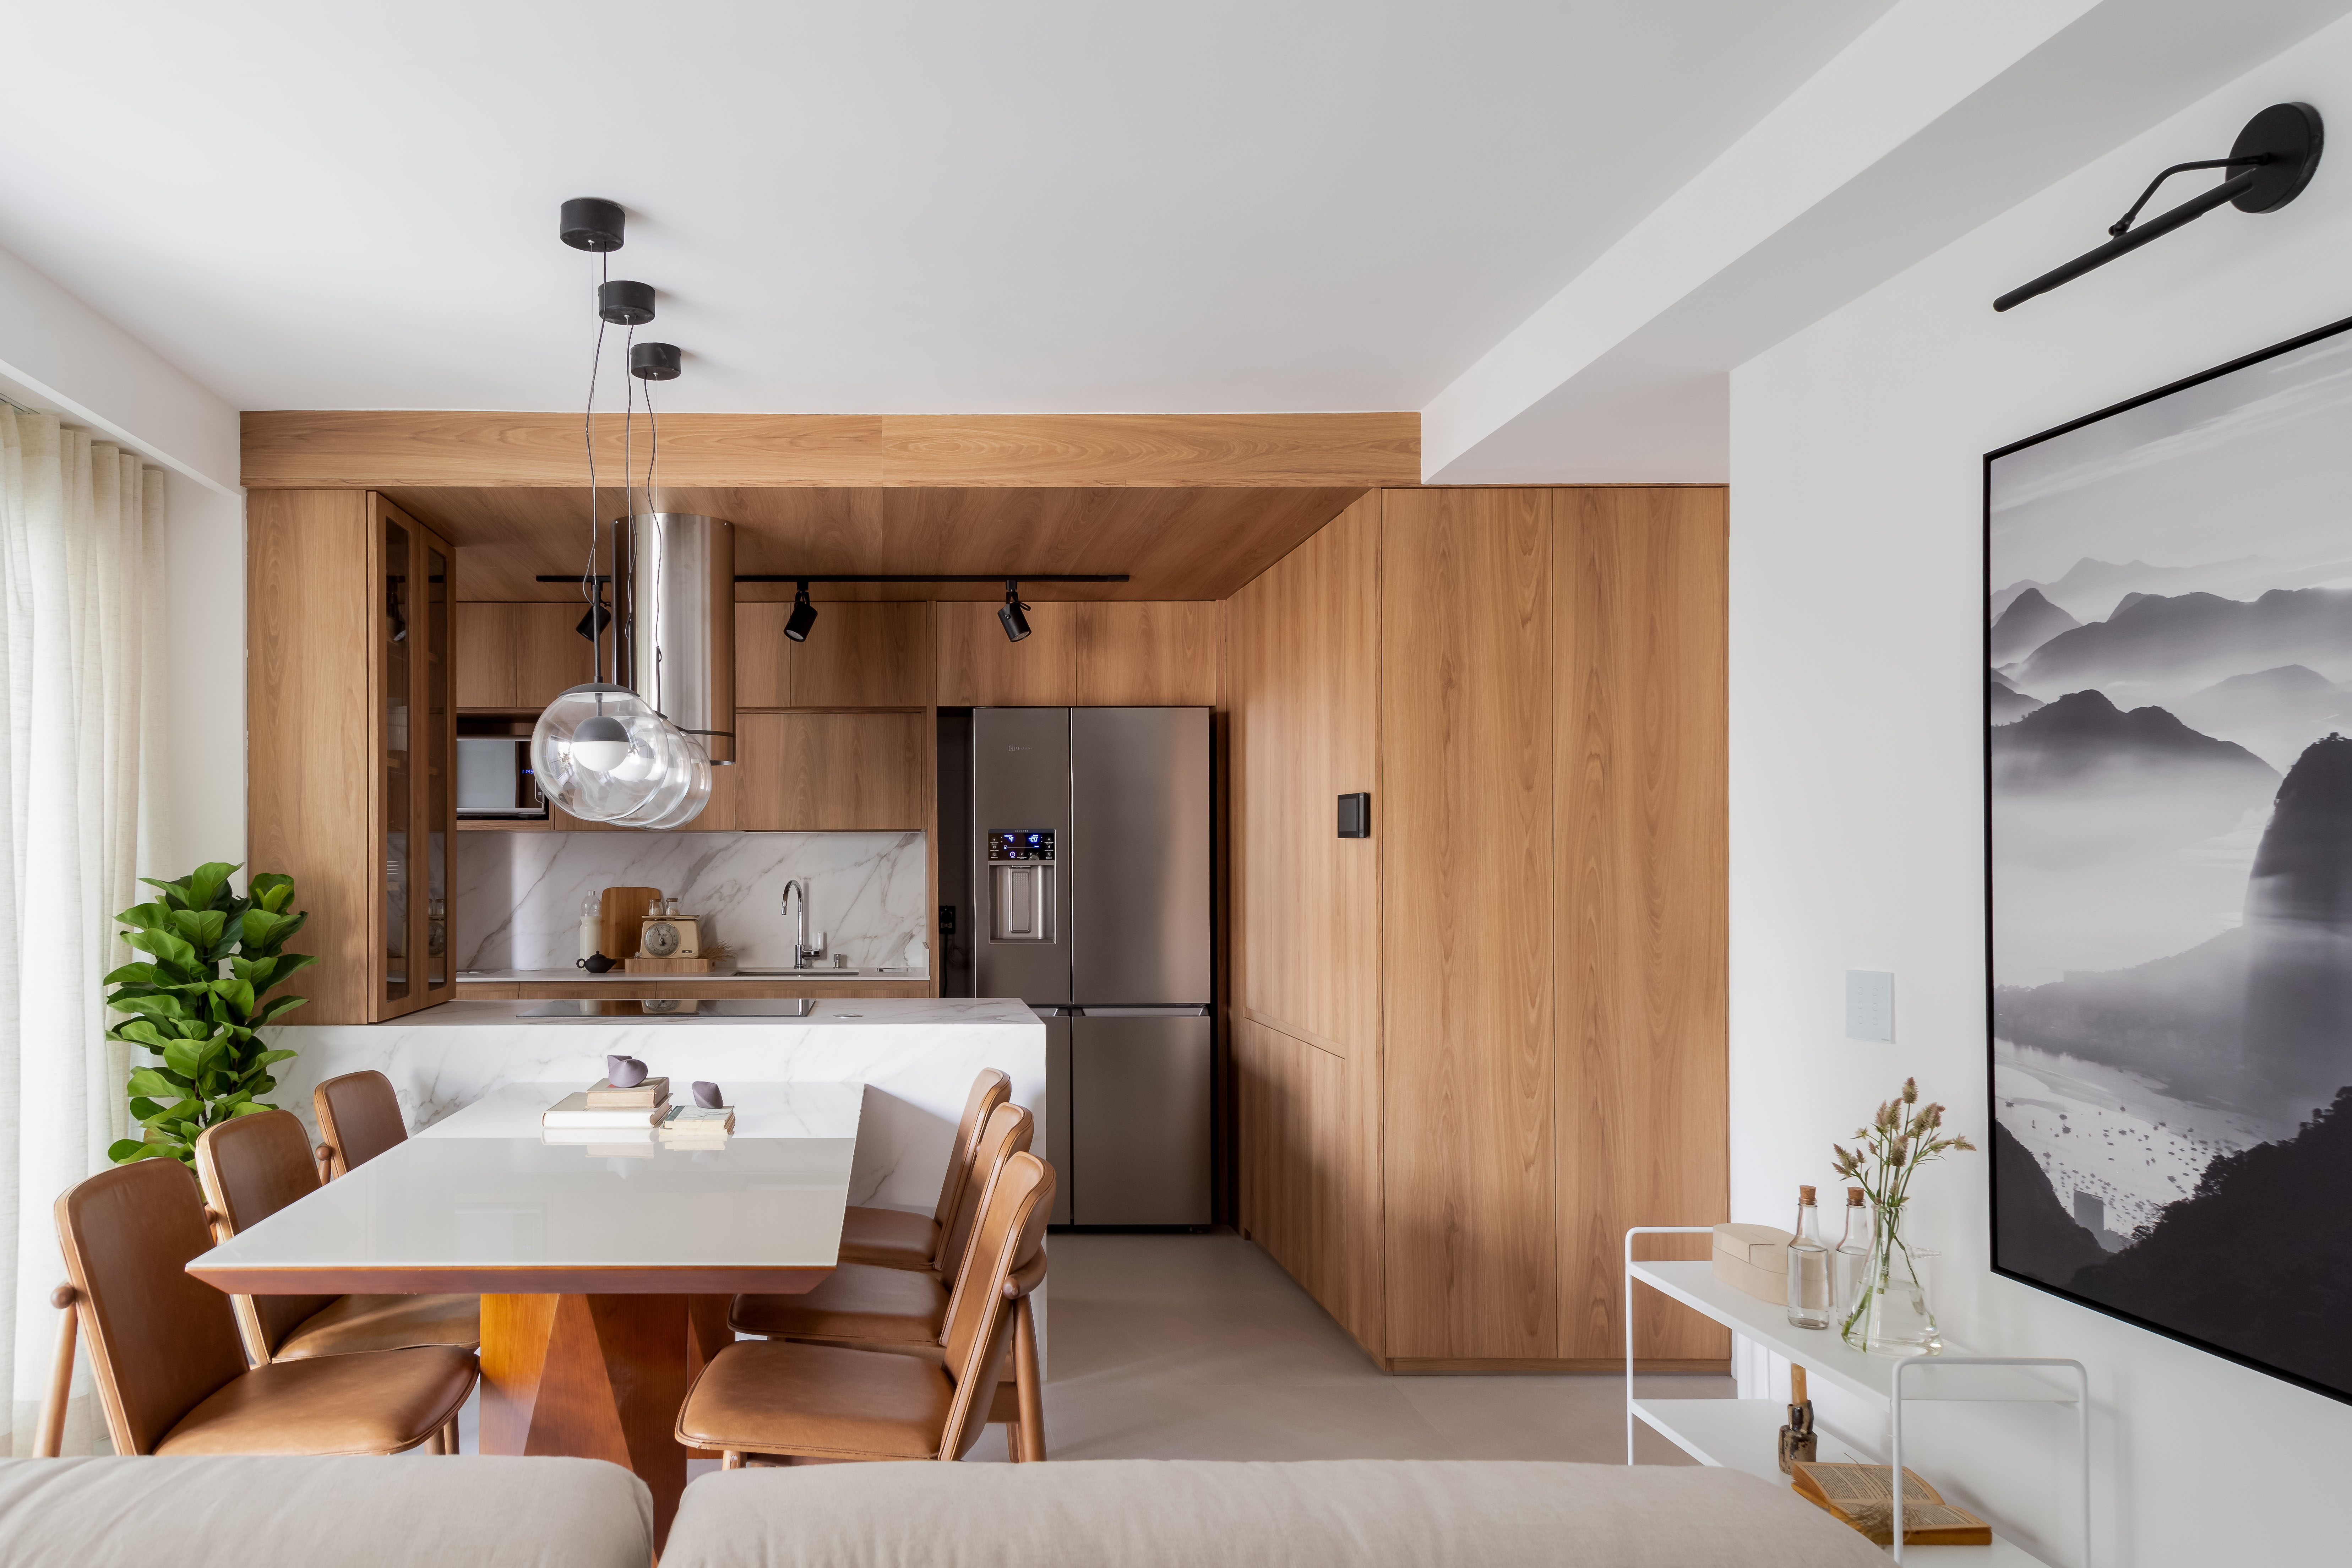 Reforma em apê de 73 m² cria mini lavabo com paredes de drywall. Projeto de Casa Tauari. Na foto, cozinha integrada com sala, paredes revestidas com painéis de madeira, bancada branca com mesa de jantar.